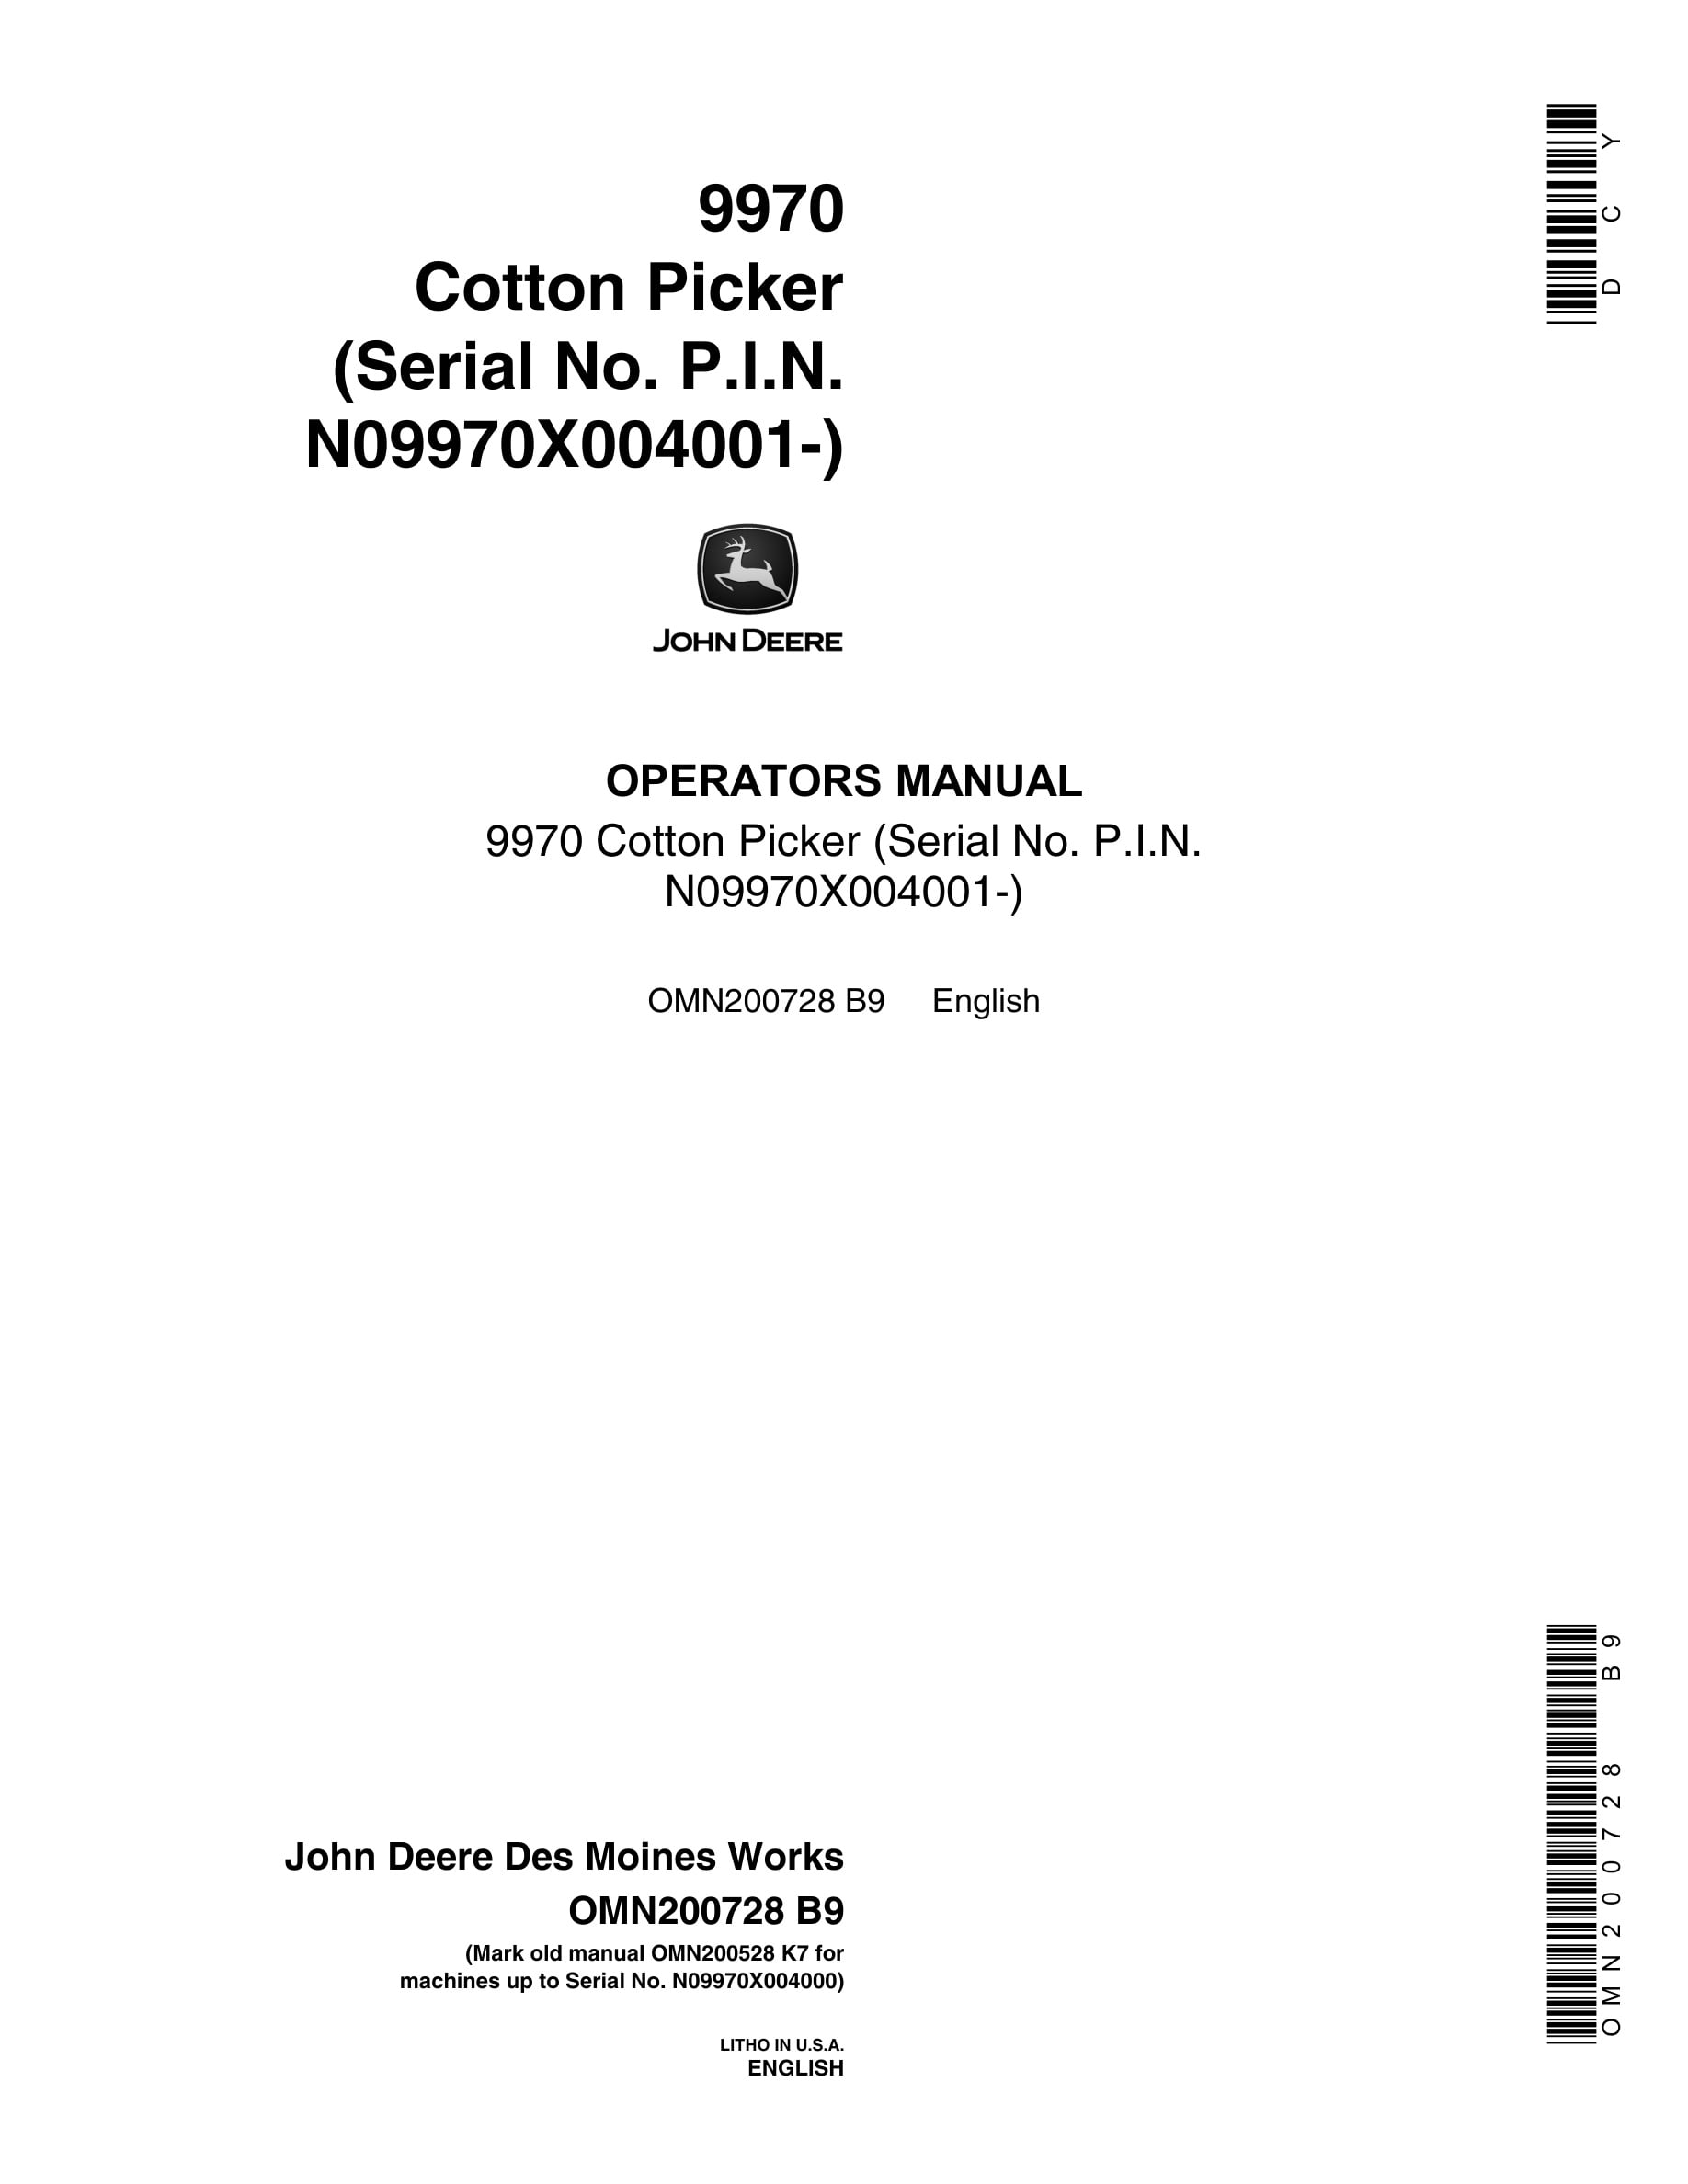 John Deere 9970 Cotton Picker Operator Manual OMN200728-1